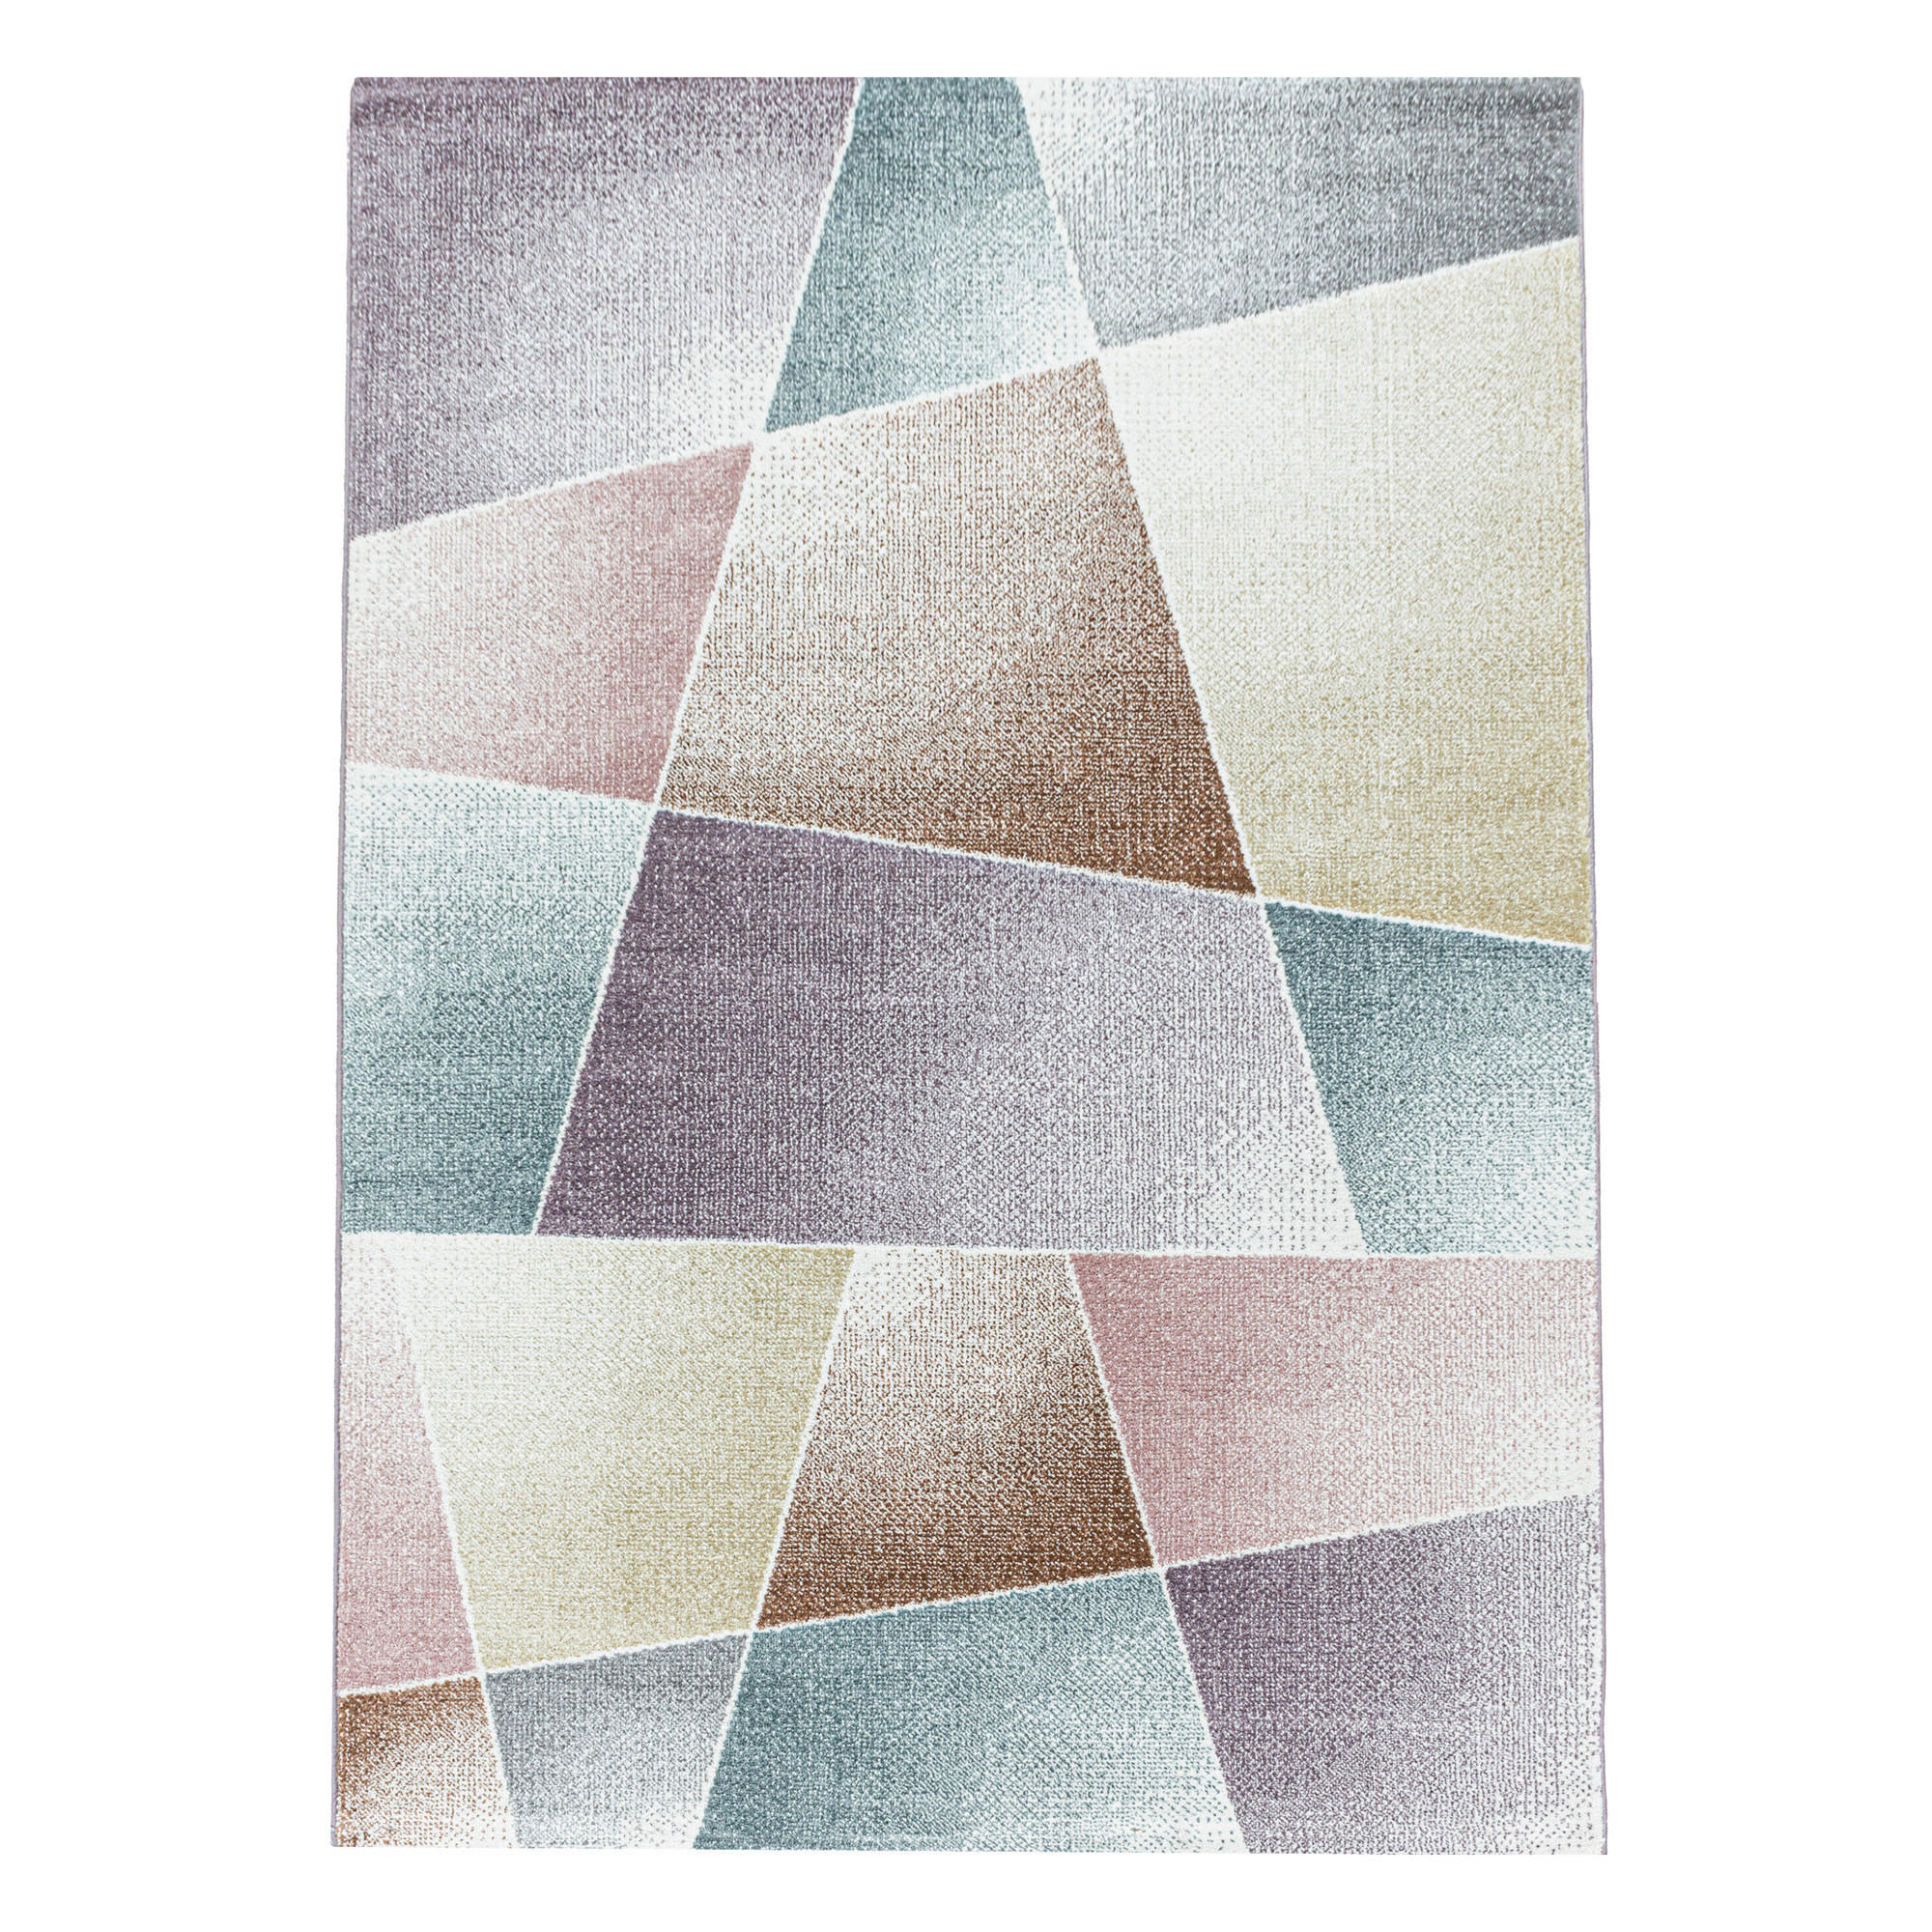 HOCHFLORTEPPICH  200/290 cm  gewebt  Multicolor   - Multicolor, Basics, Textil (200/290cm) - Novel